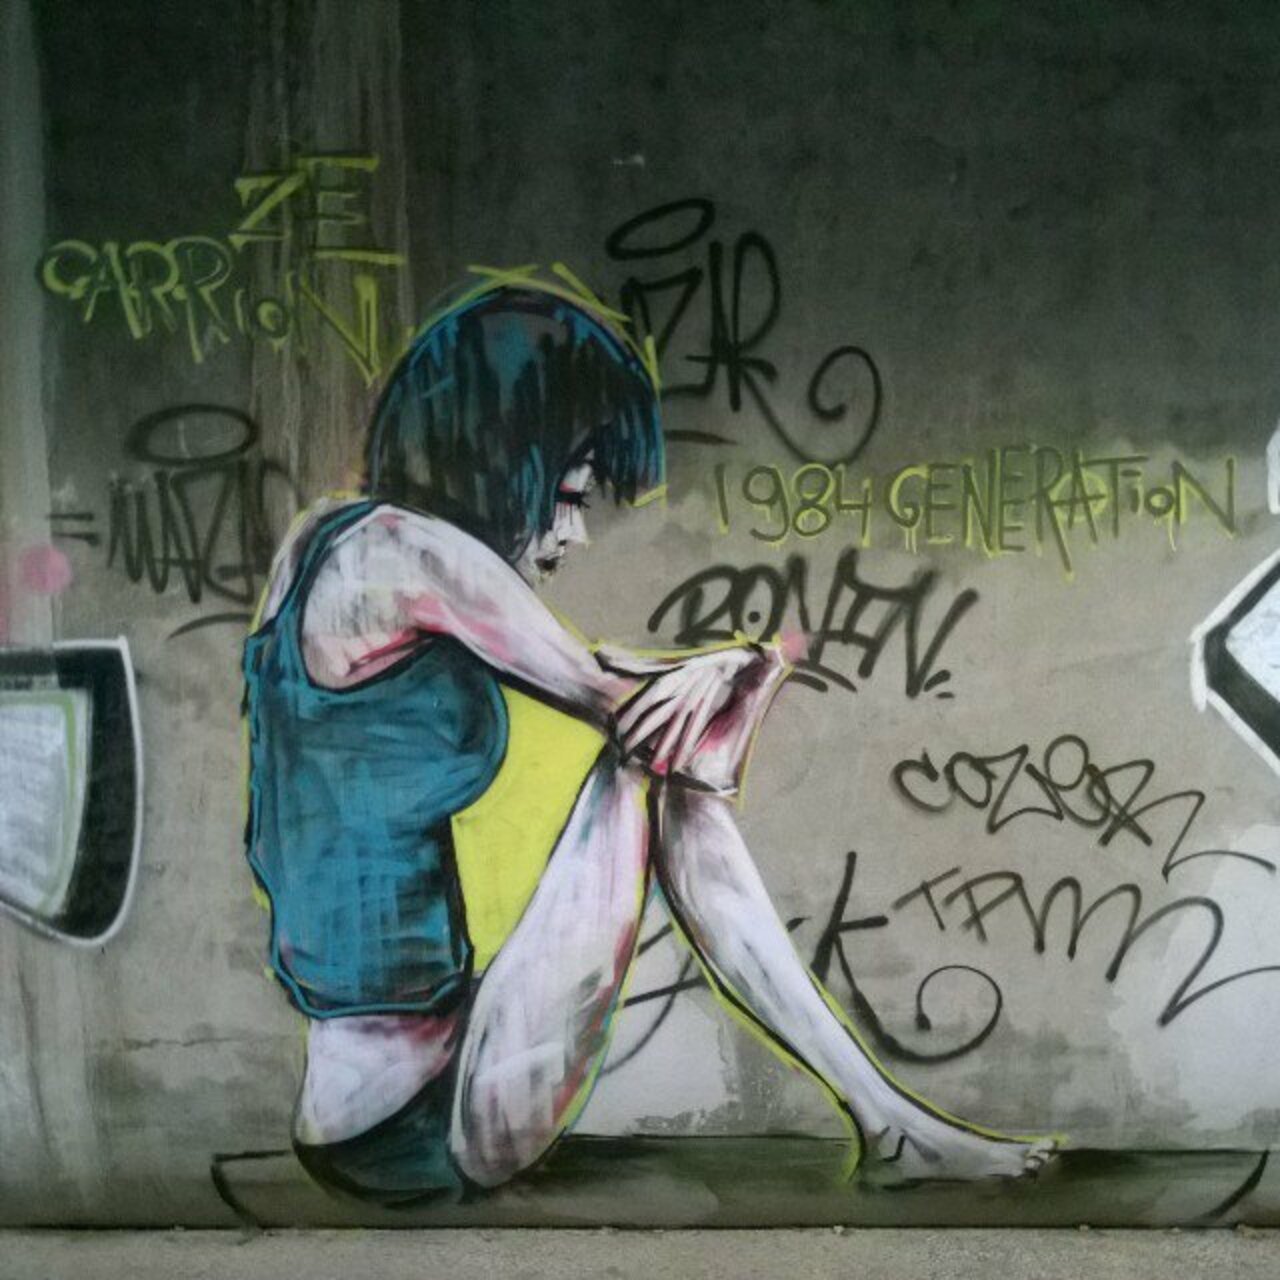 RT @StArtEverywhere: #1984 #generation .. #love #ilegal. #zecarrion at #paris . #lavillette . #graffiti #streetart #streetartparis ##par… https://t.co/gKnmwluFBf